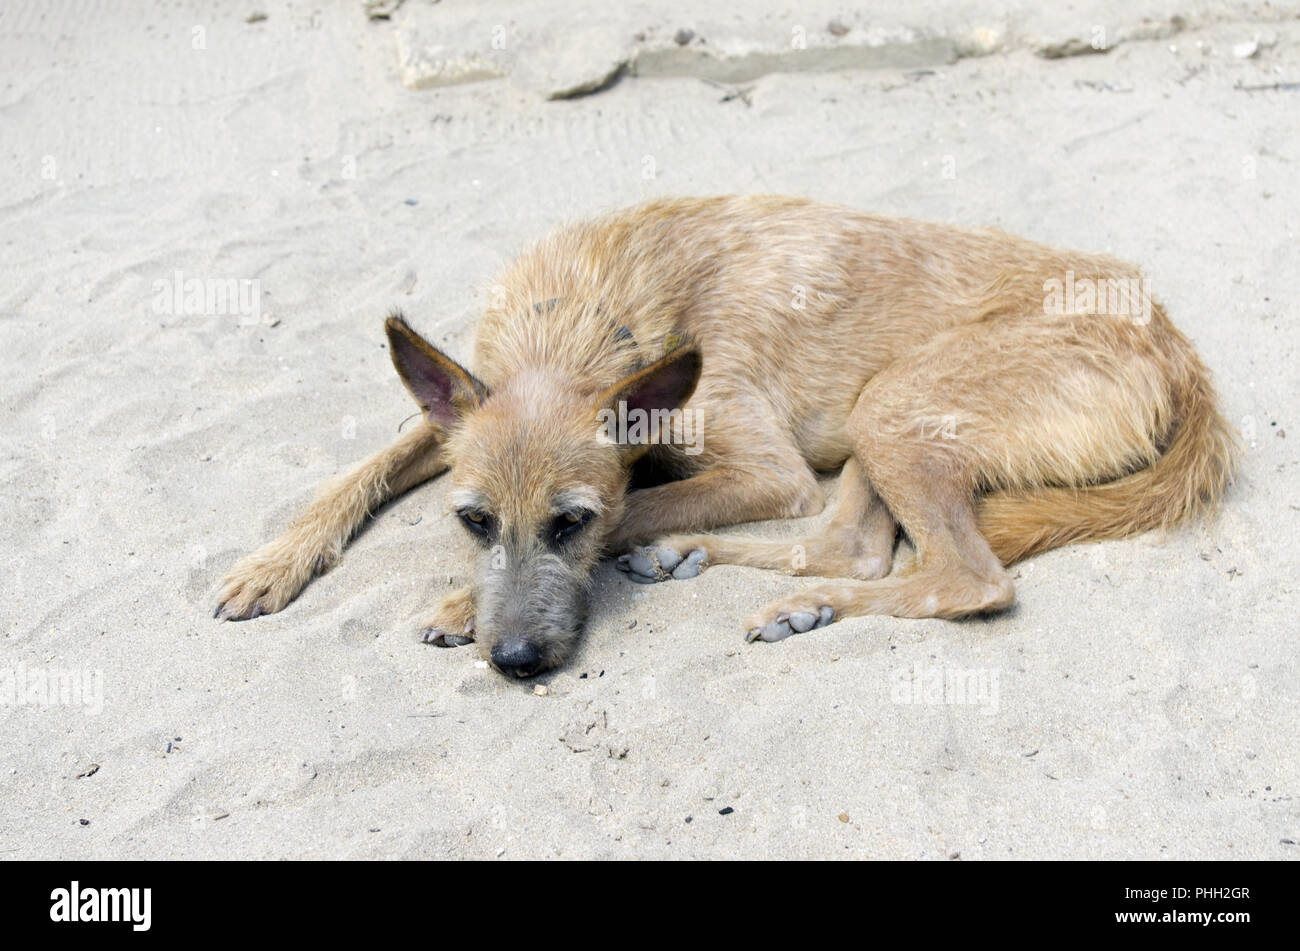 yellow beach dog Stock Photo